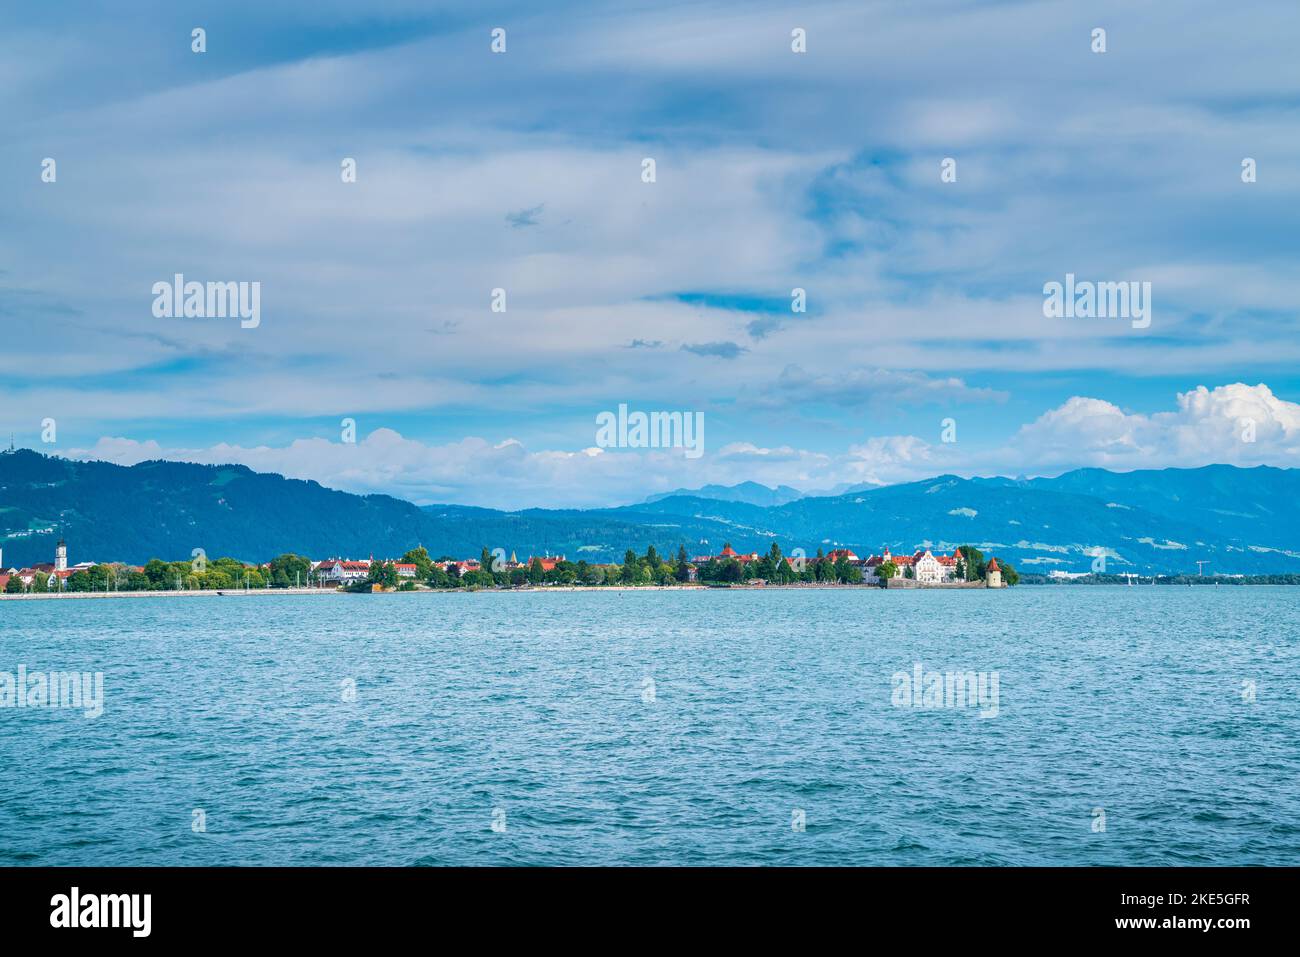 Alemania, Bodensee lindau lago agua naturaleza paisaje vista alpes montañas puesta de sol en verano Foto de stock